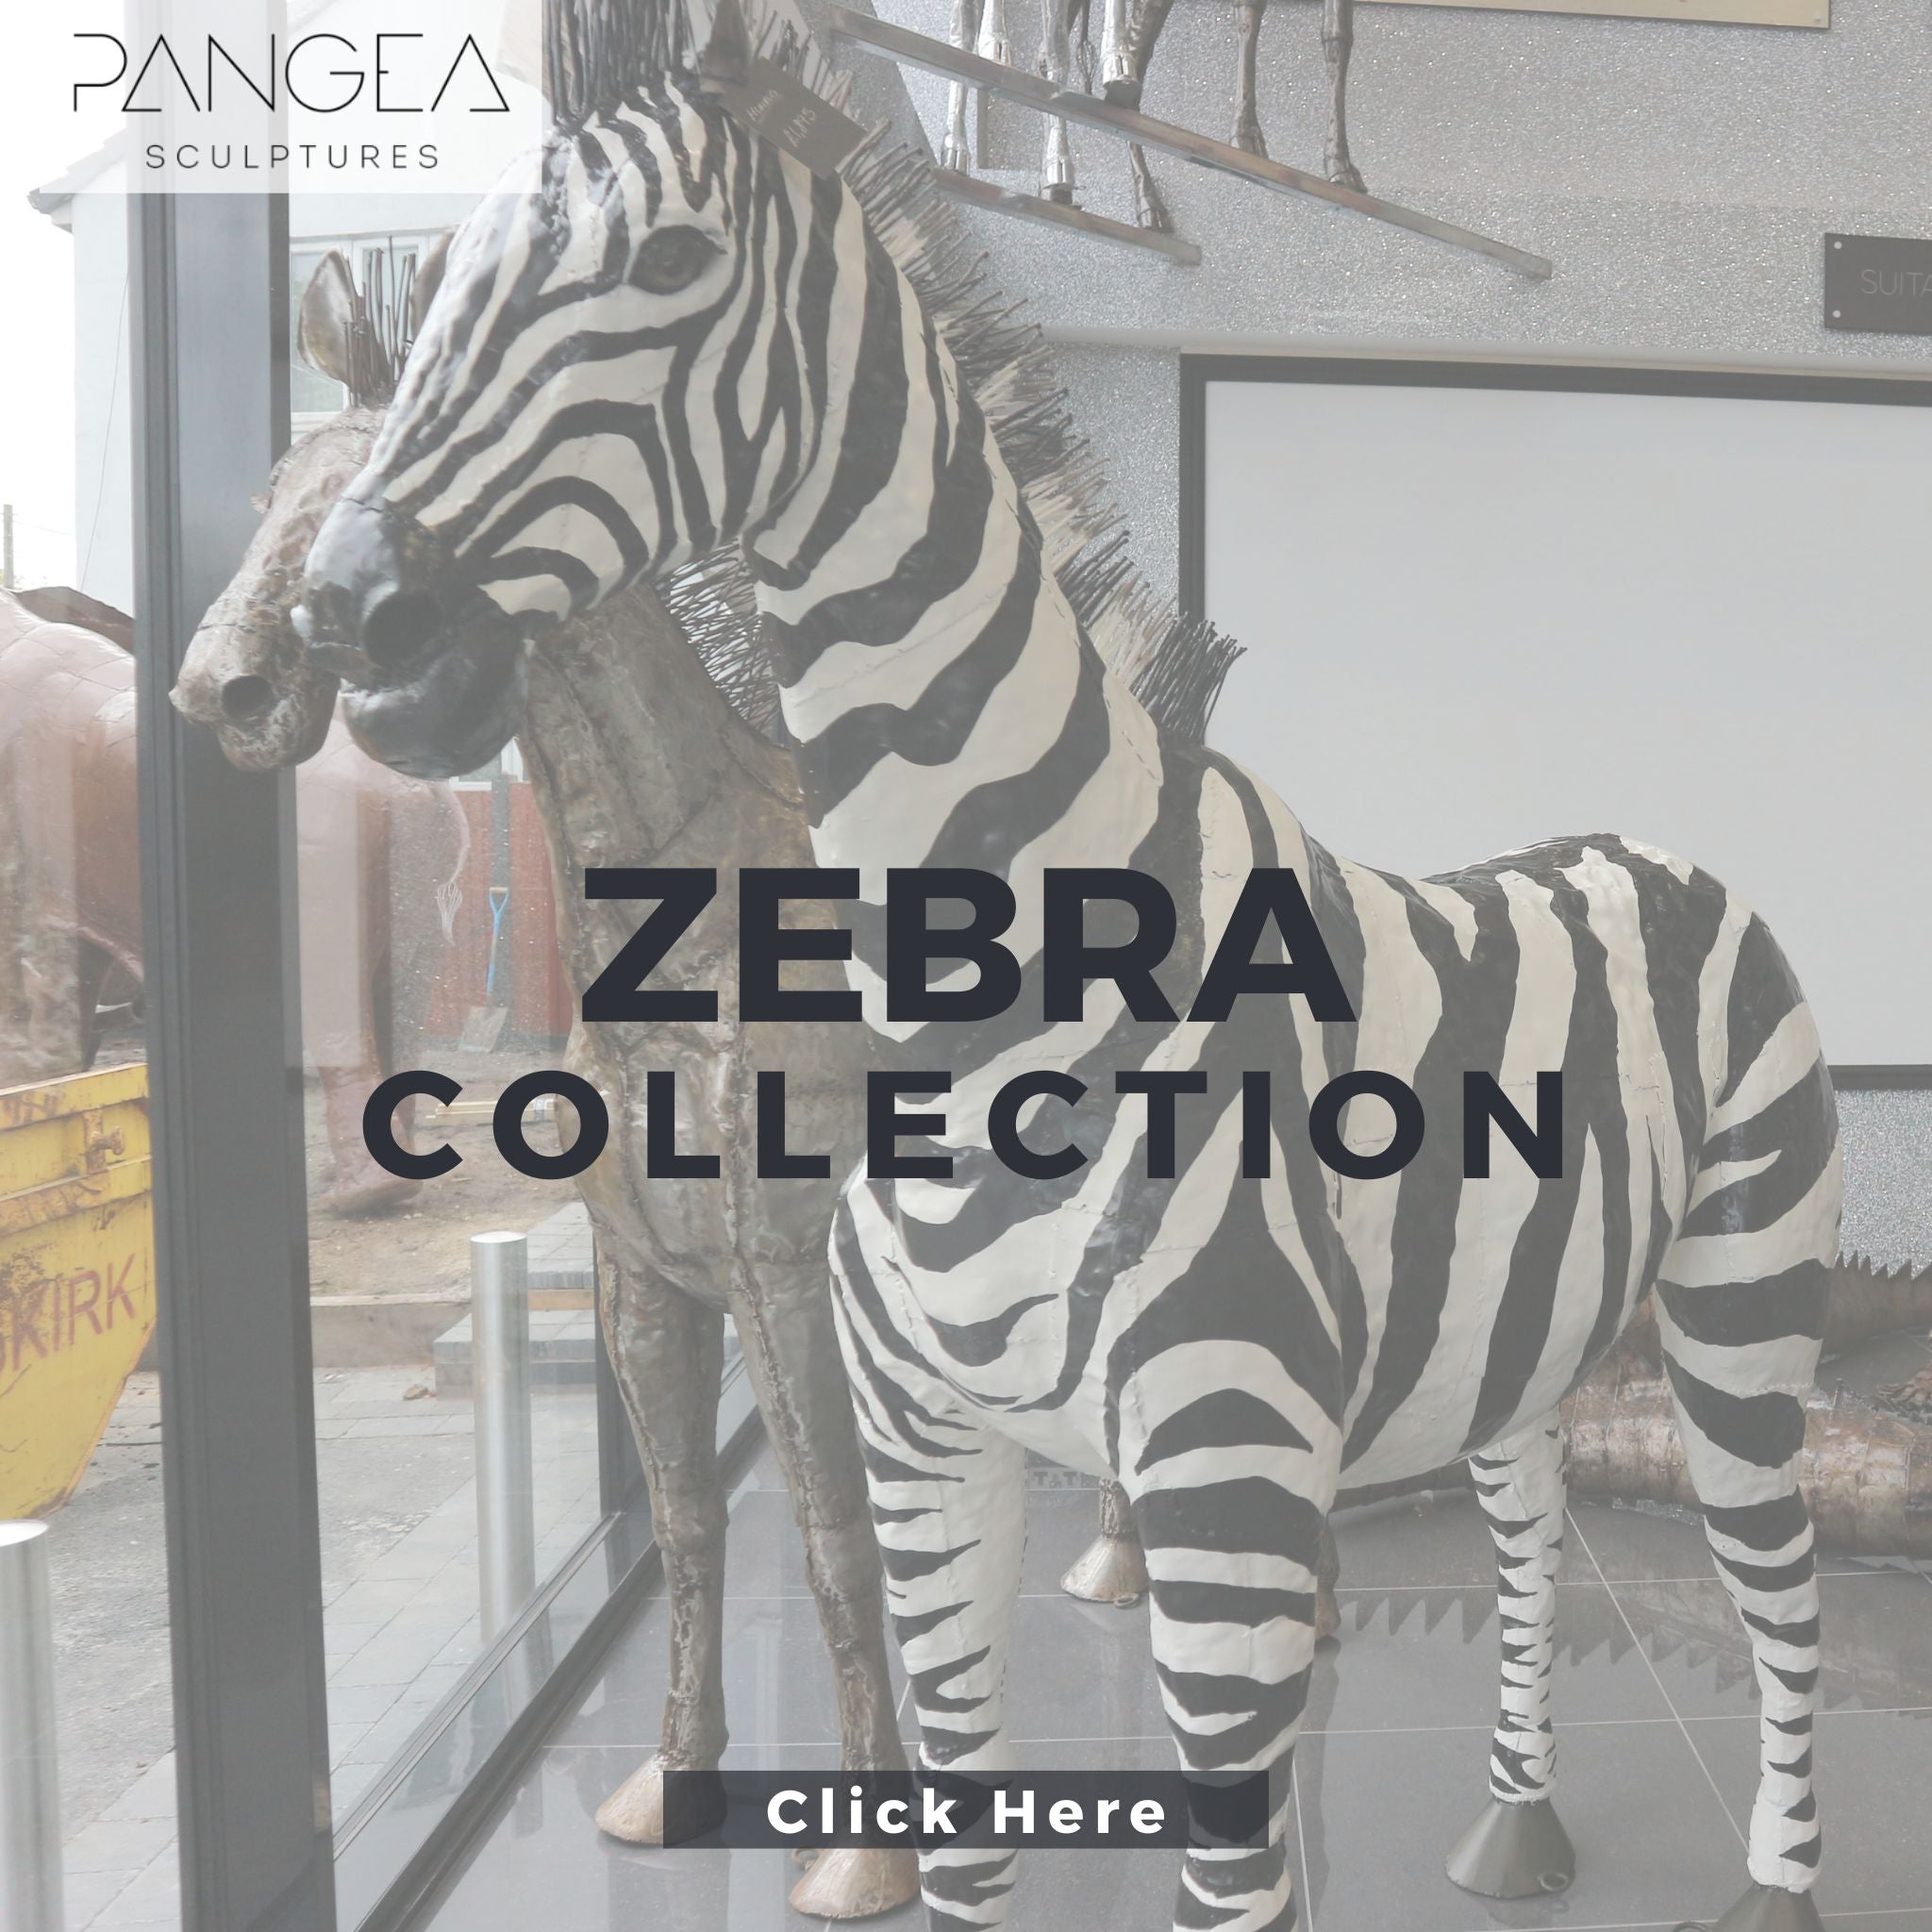 Zebra Sculptures - Pangea Sculptures